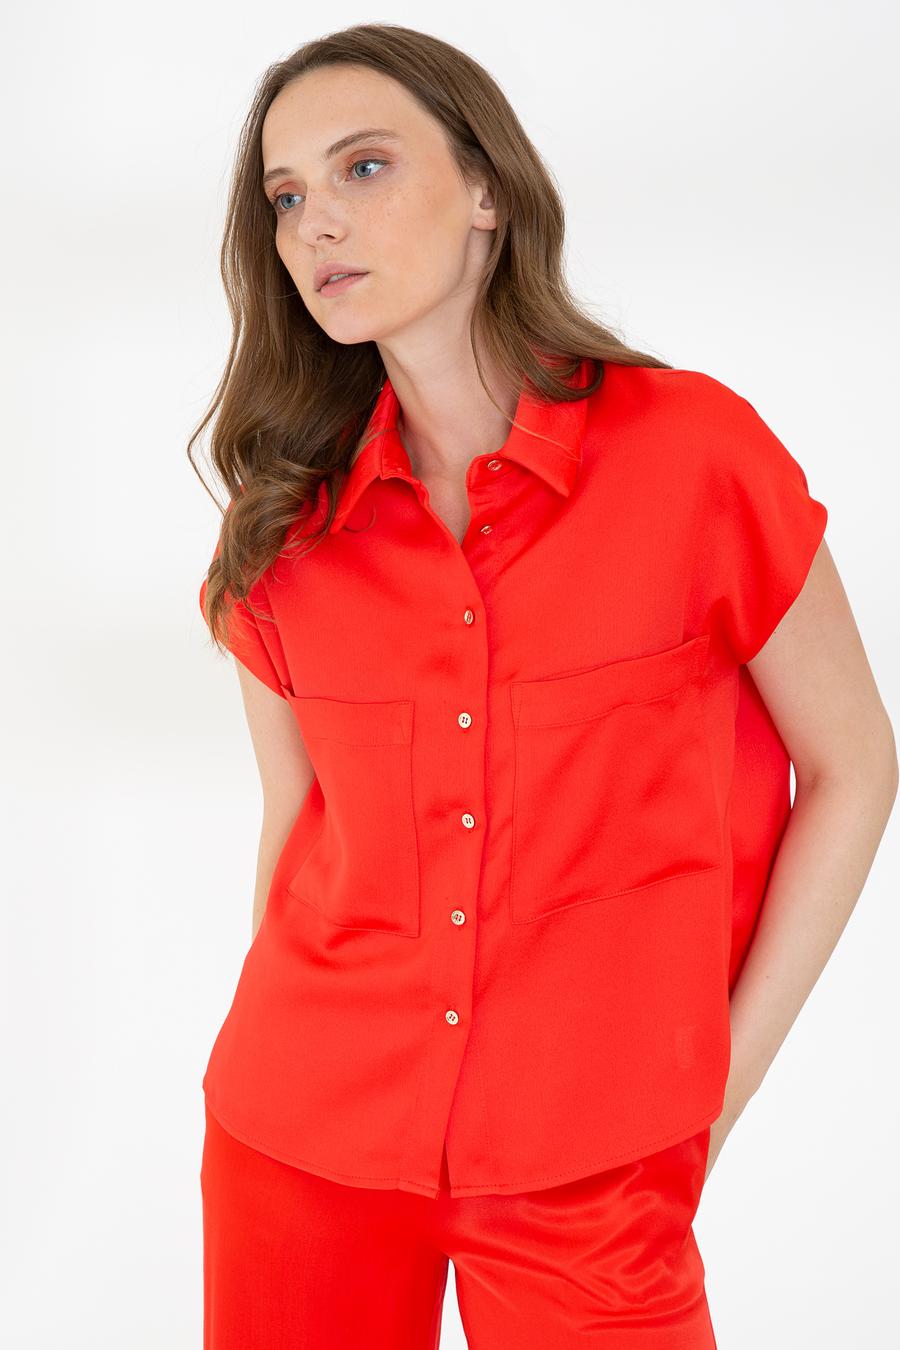 پیراهن  قرمز  استاندارد  زنانه  پیرکاردین